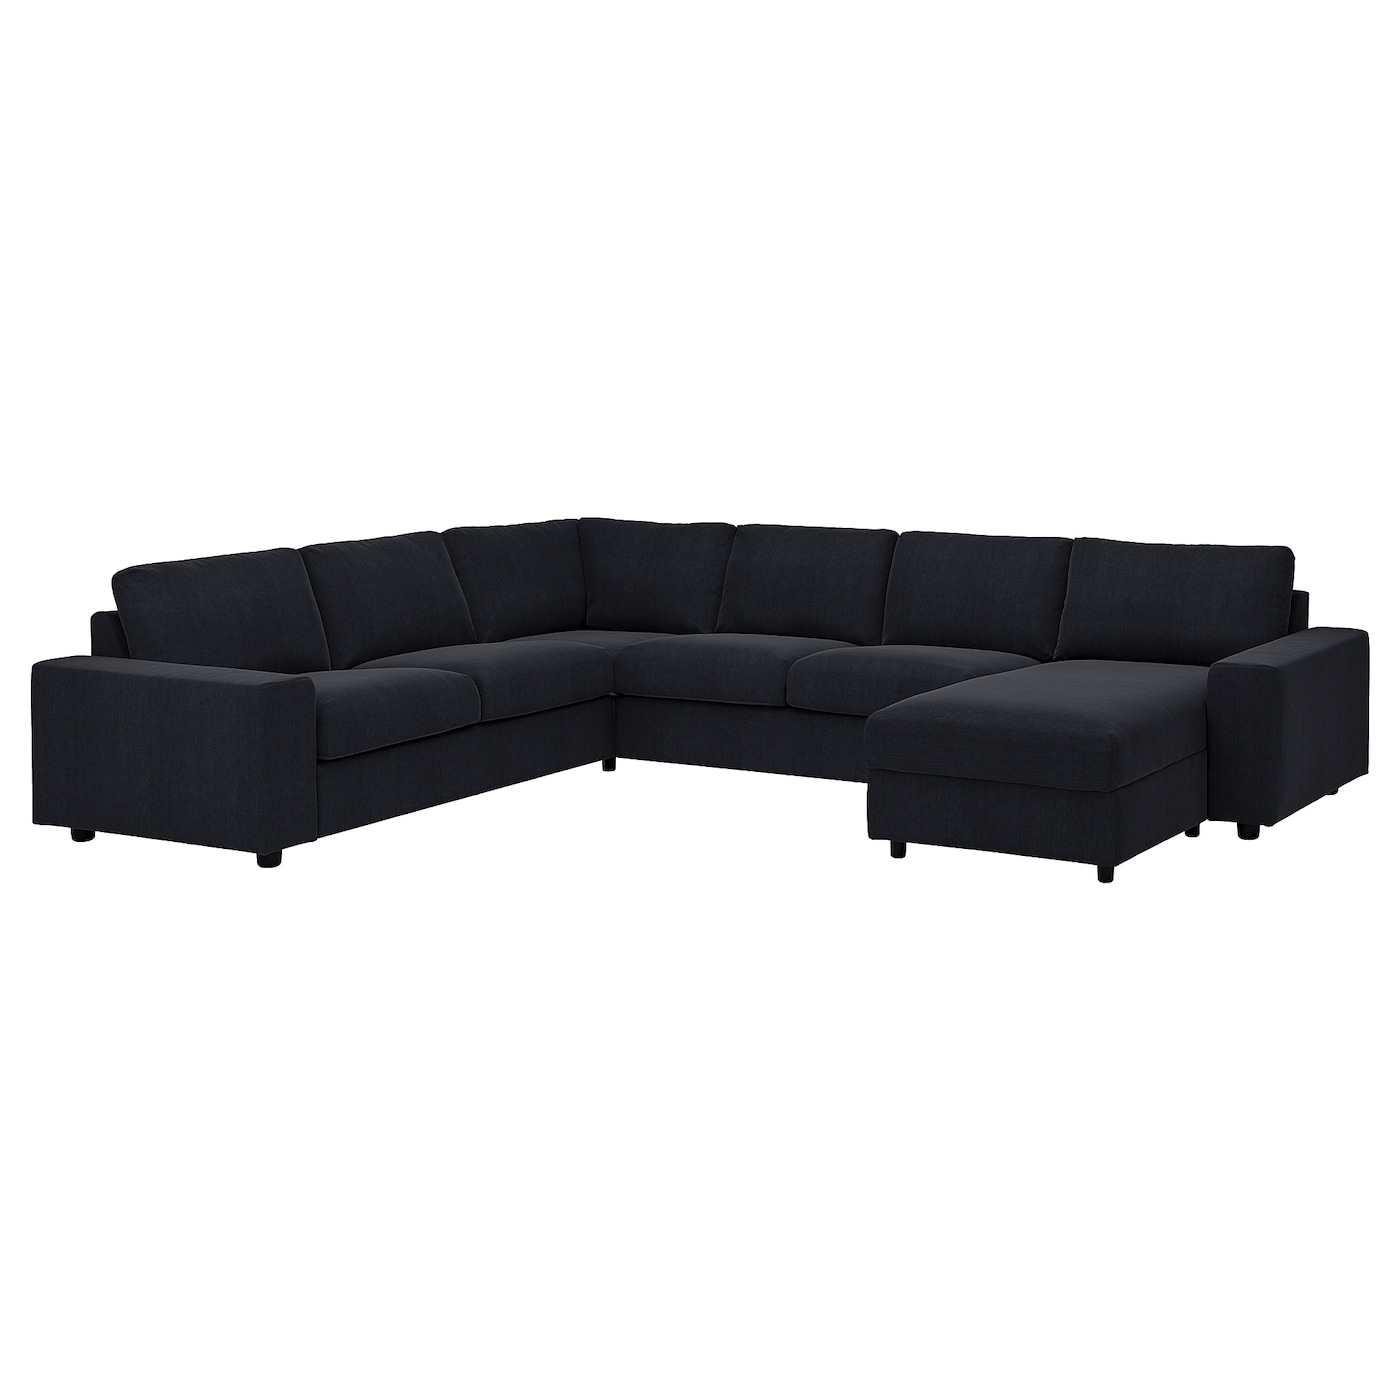 ВИМЛЕ Диван угловой, 5-местный. диван+диван, с широкими подлокотниками/Saxemara черно-синий VIMLE IKEA цена и фото